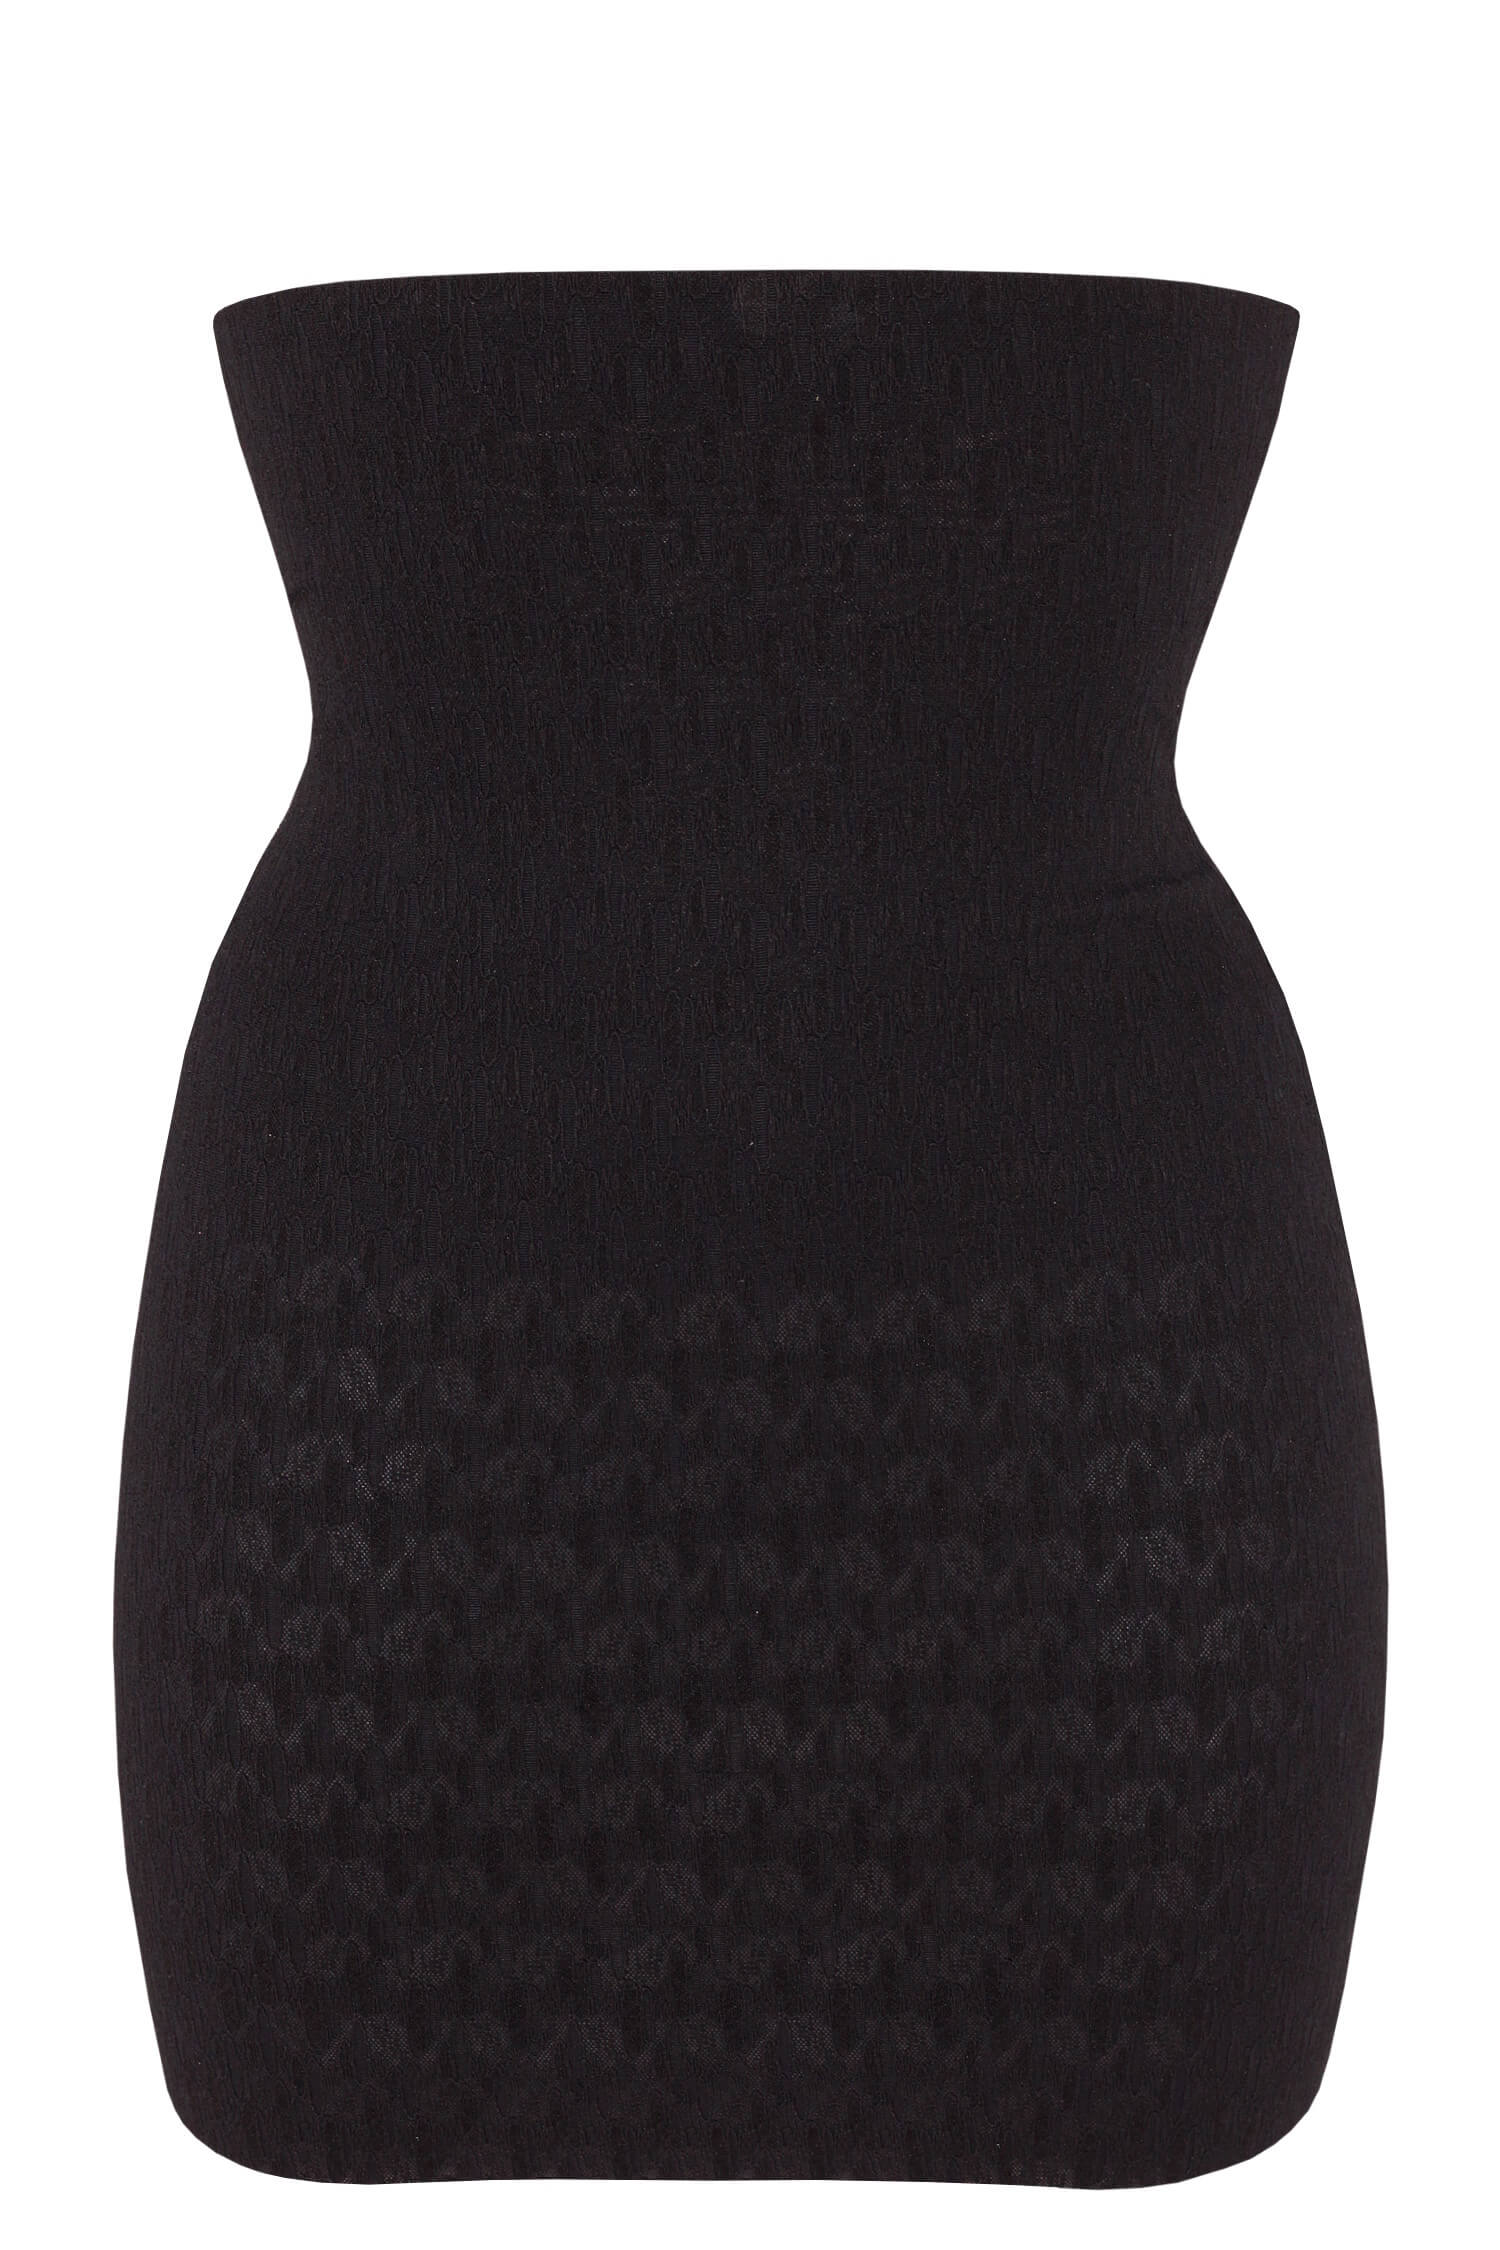 Janča formující spodnička - sukně 9587 L černá